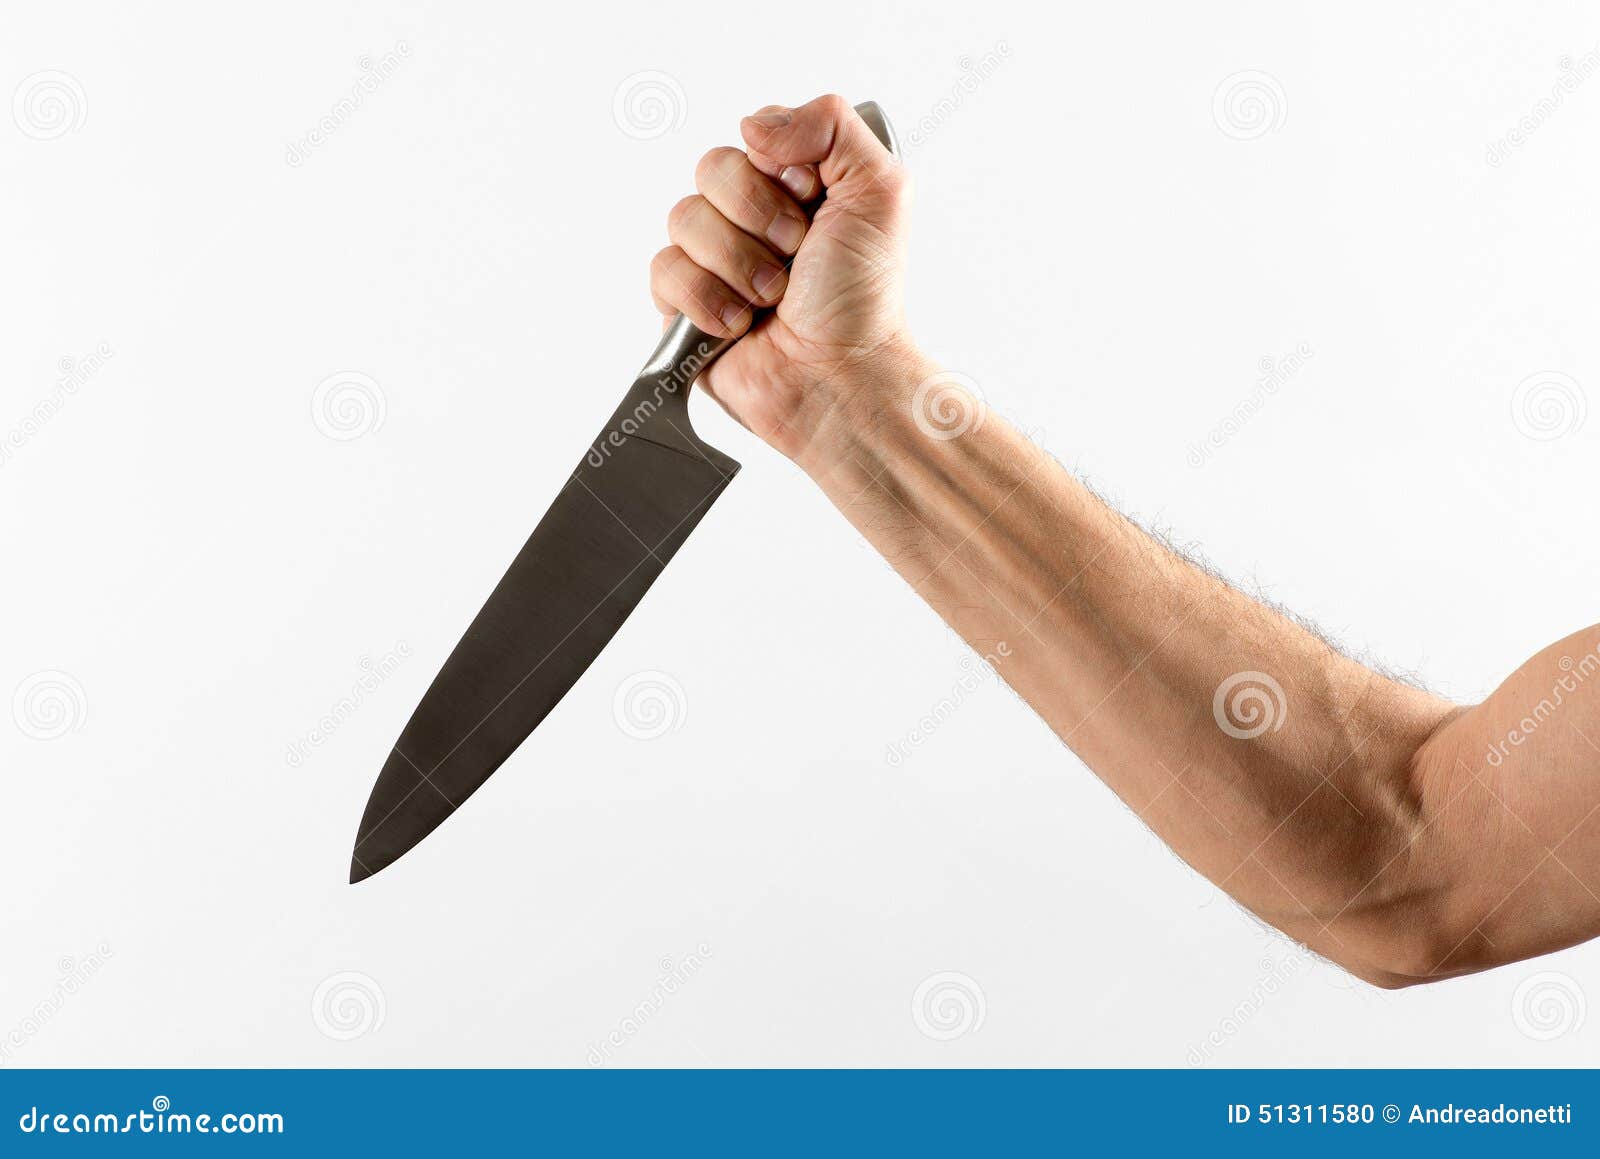 A pesar de la pandemia Don Delfino no deja de afilar cuchillos